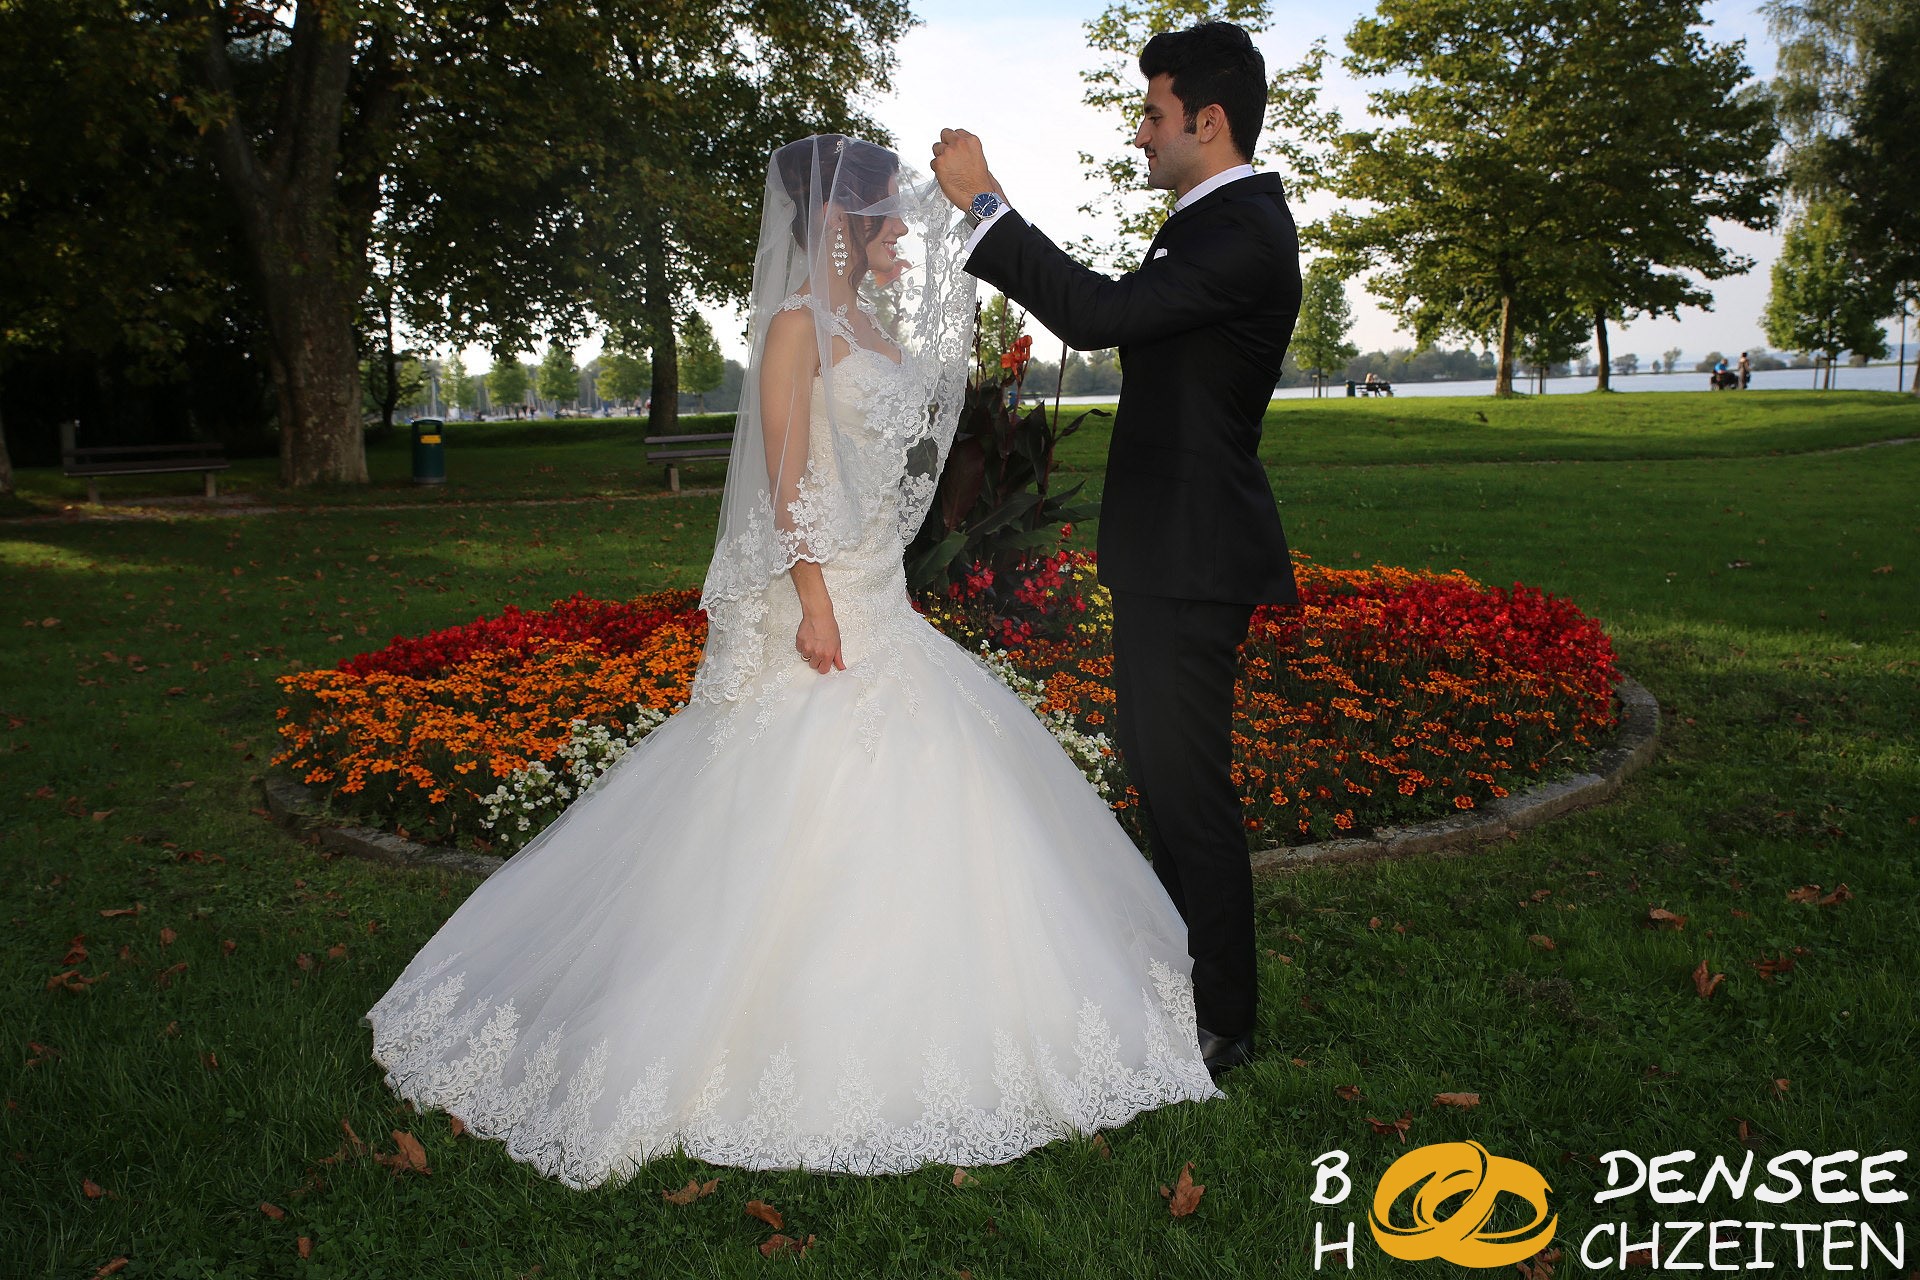 2014 09 06 Hochzeit Hohenems Sercan Muazzez BODENSEE HOCHZEITEN COM IMG 8469